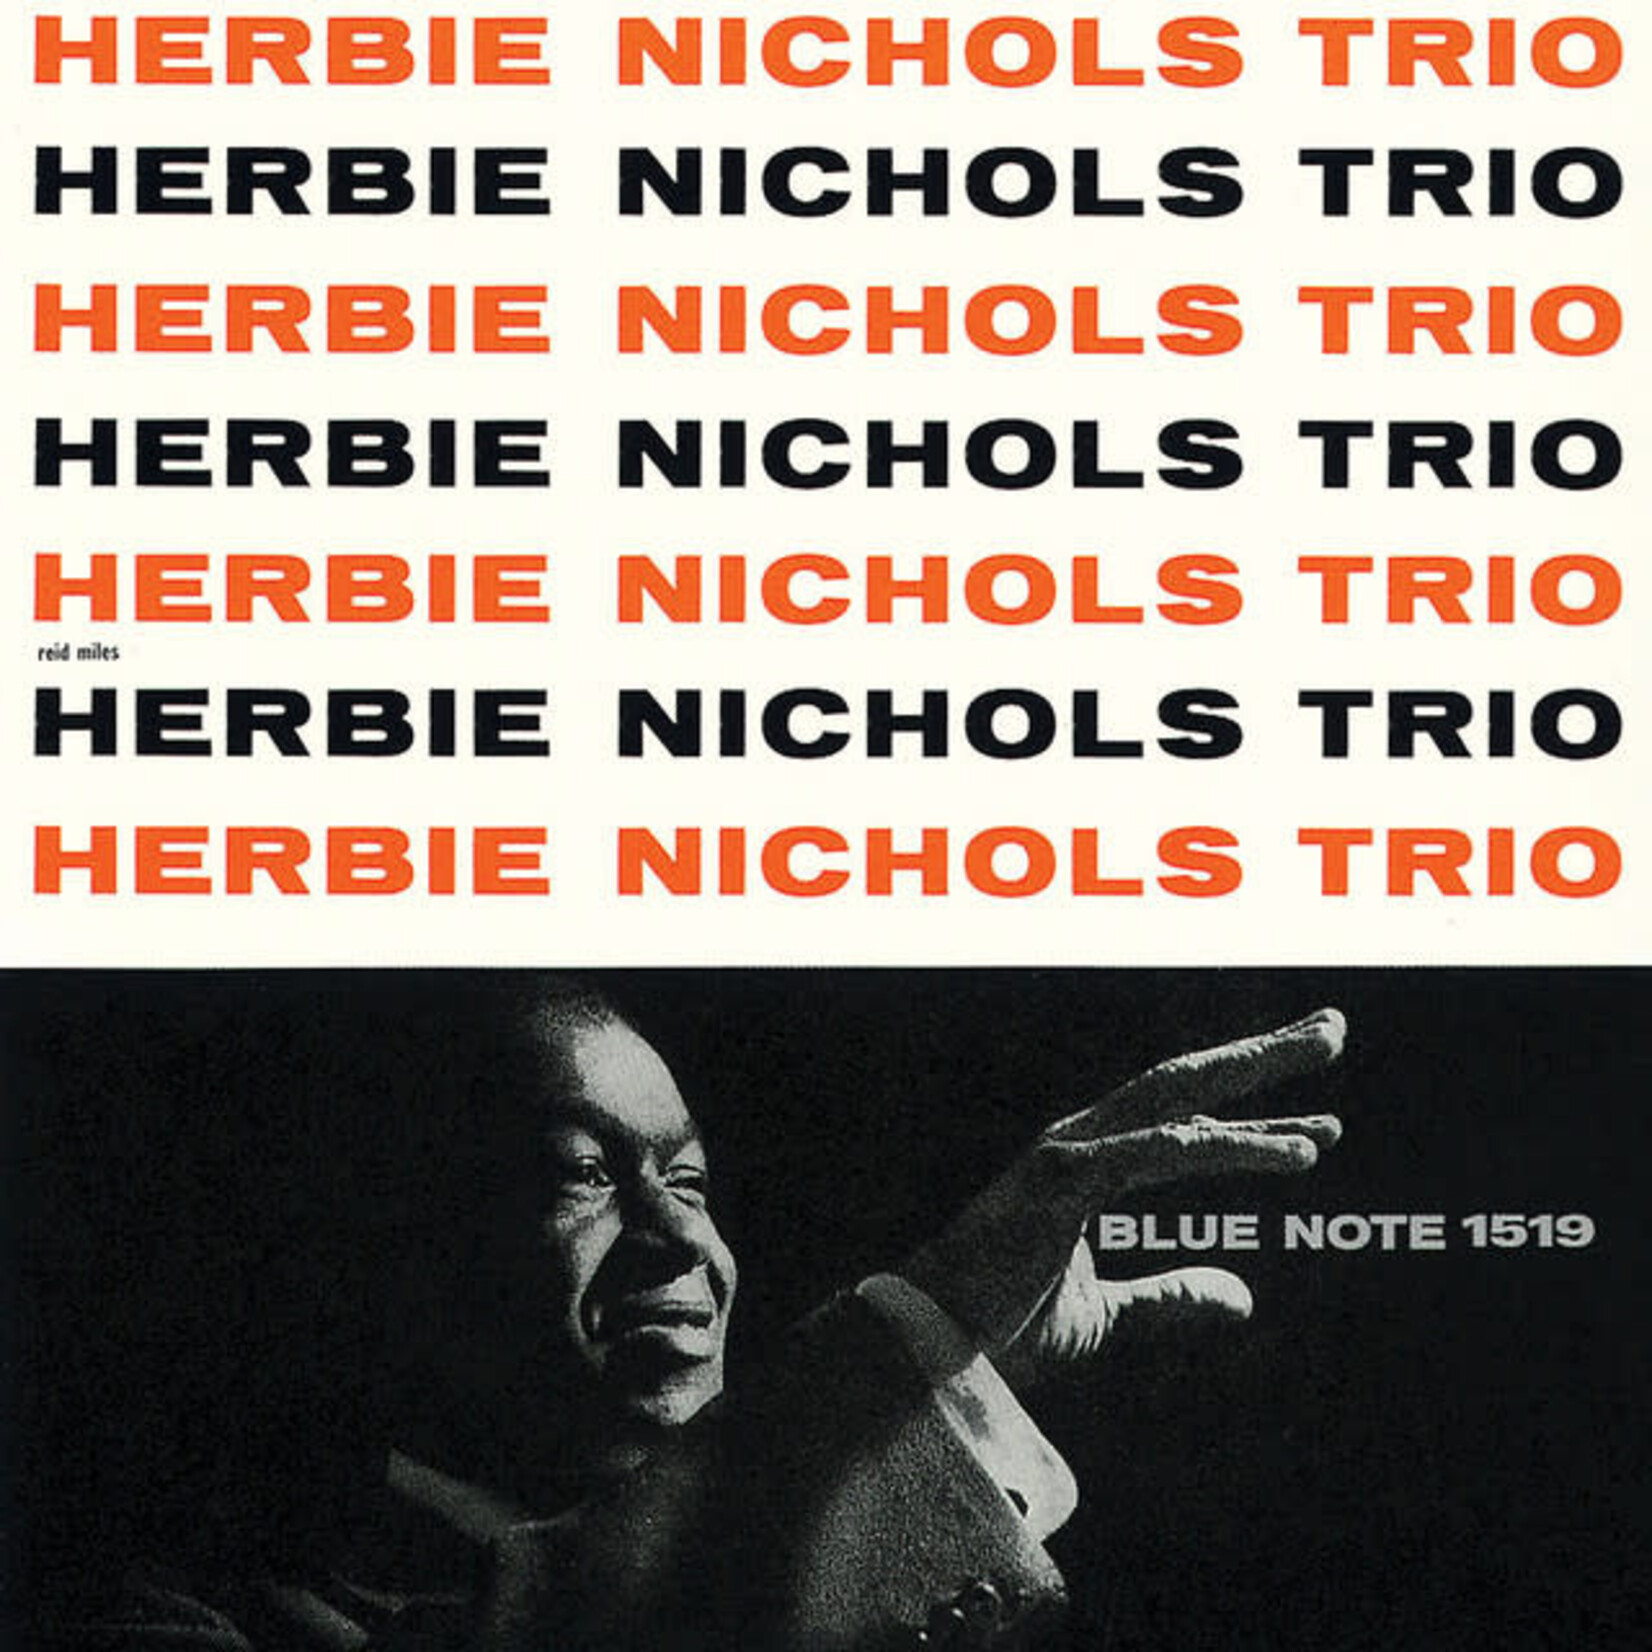 [New] Herbie Trio Nichols - Herbie Nichols Trio (Blue Note Tone Poet Series)